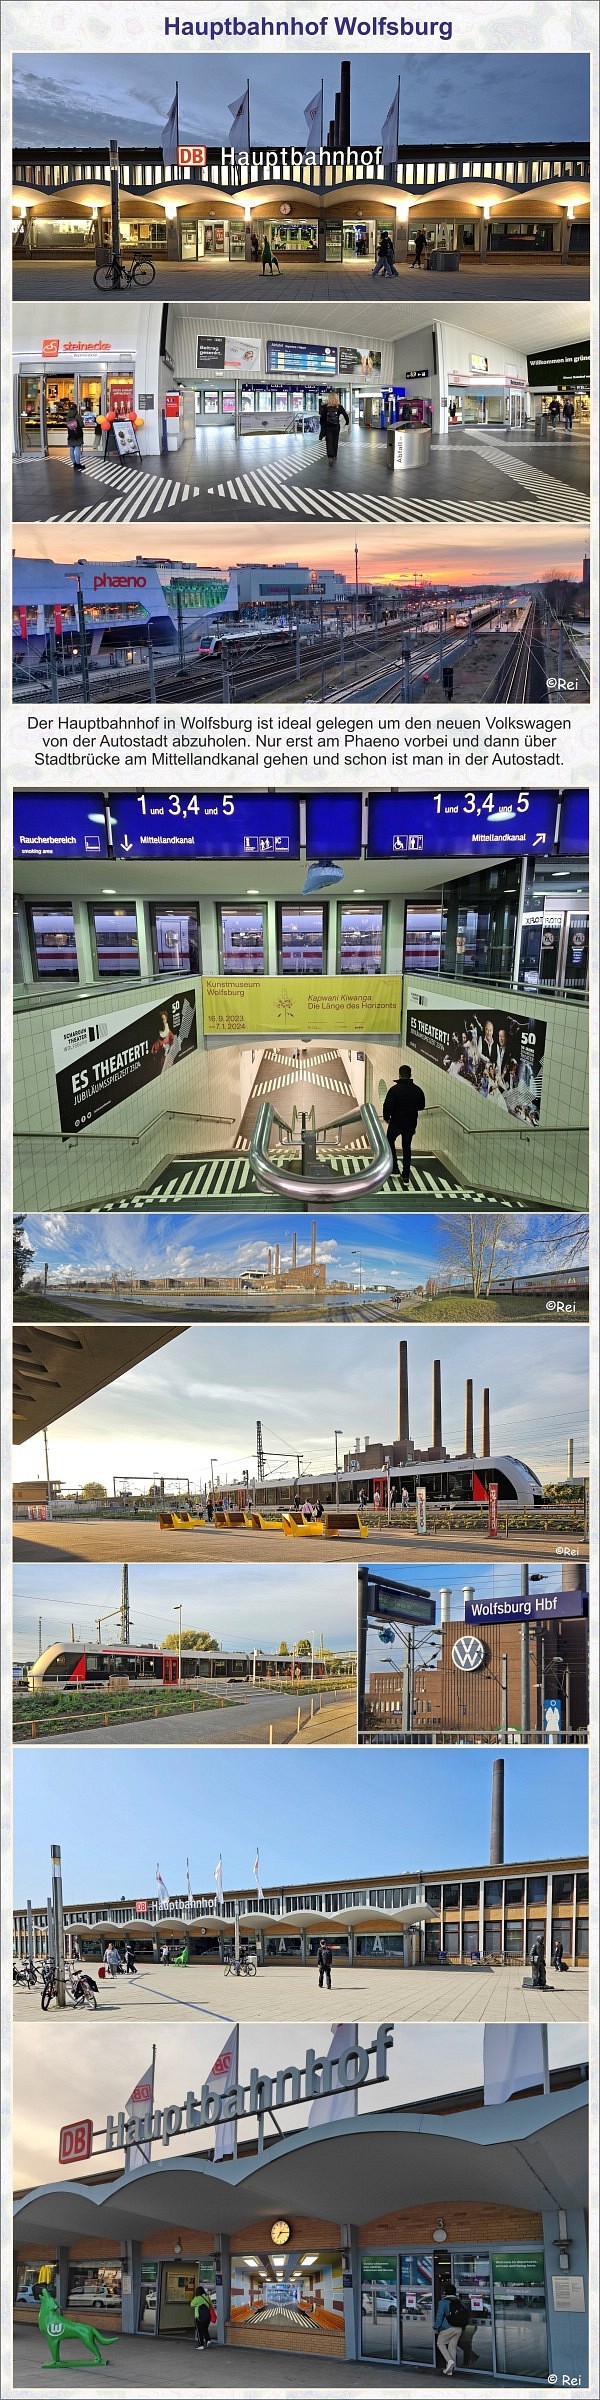 Hauptbahnhof Wolfsburg